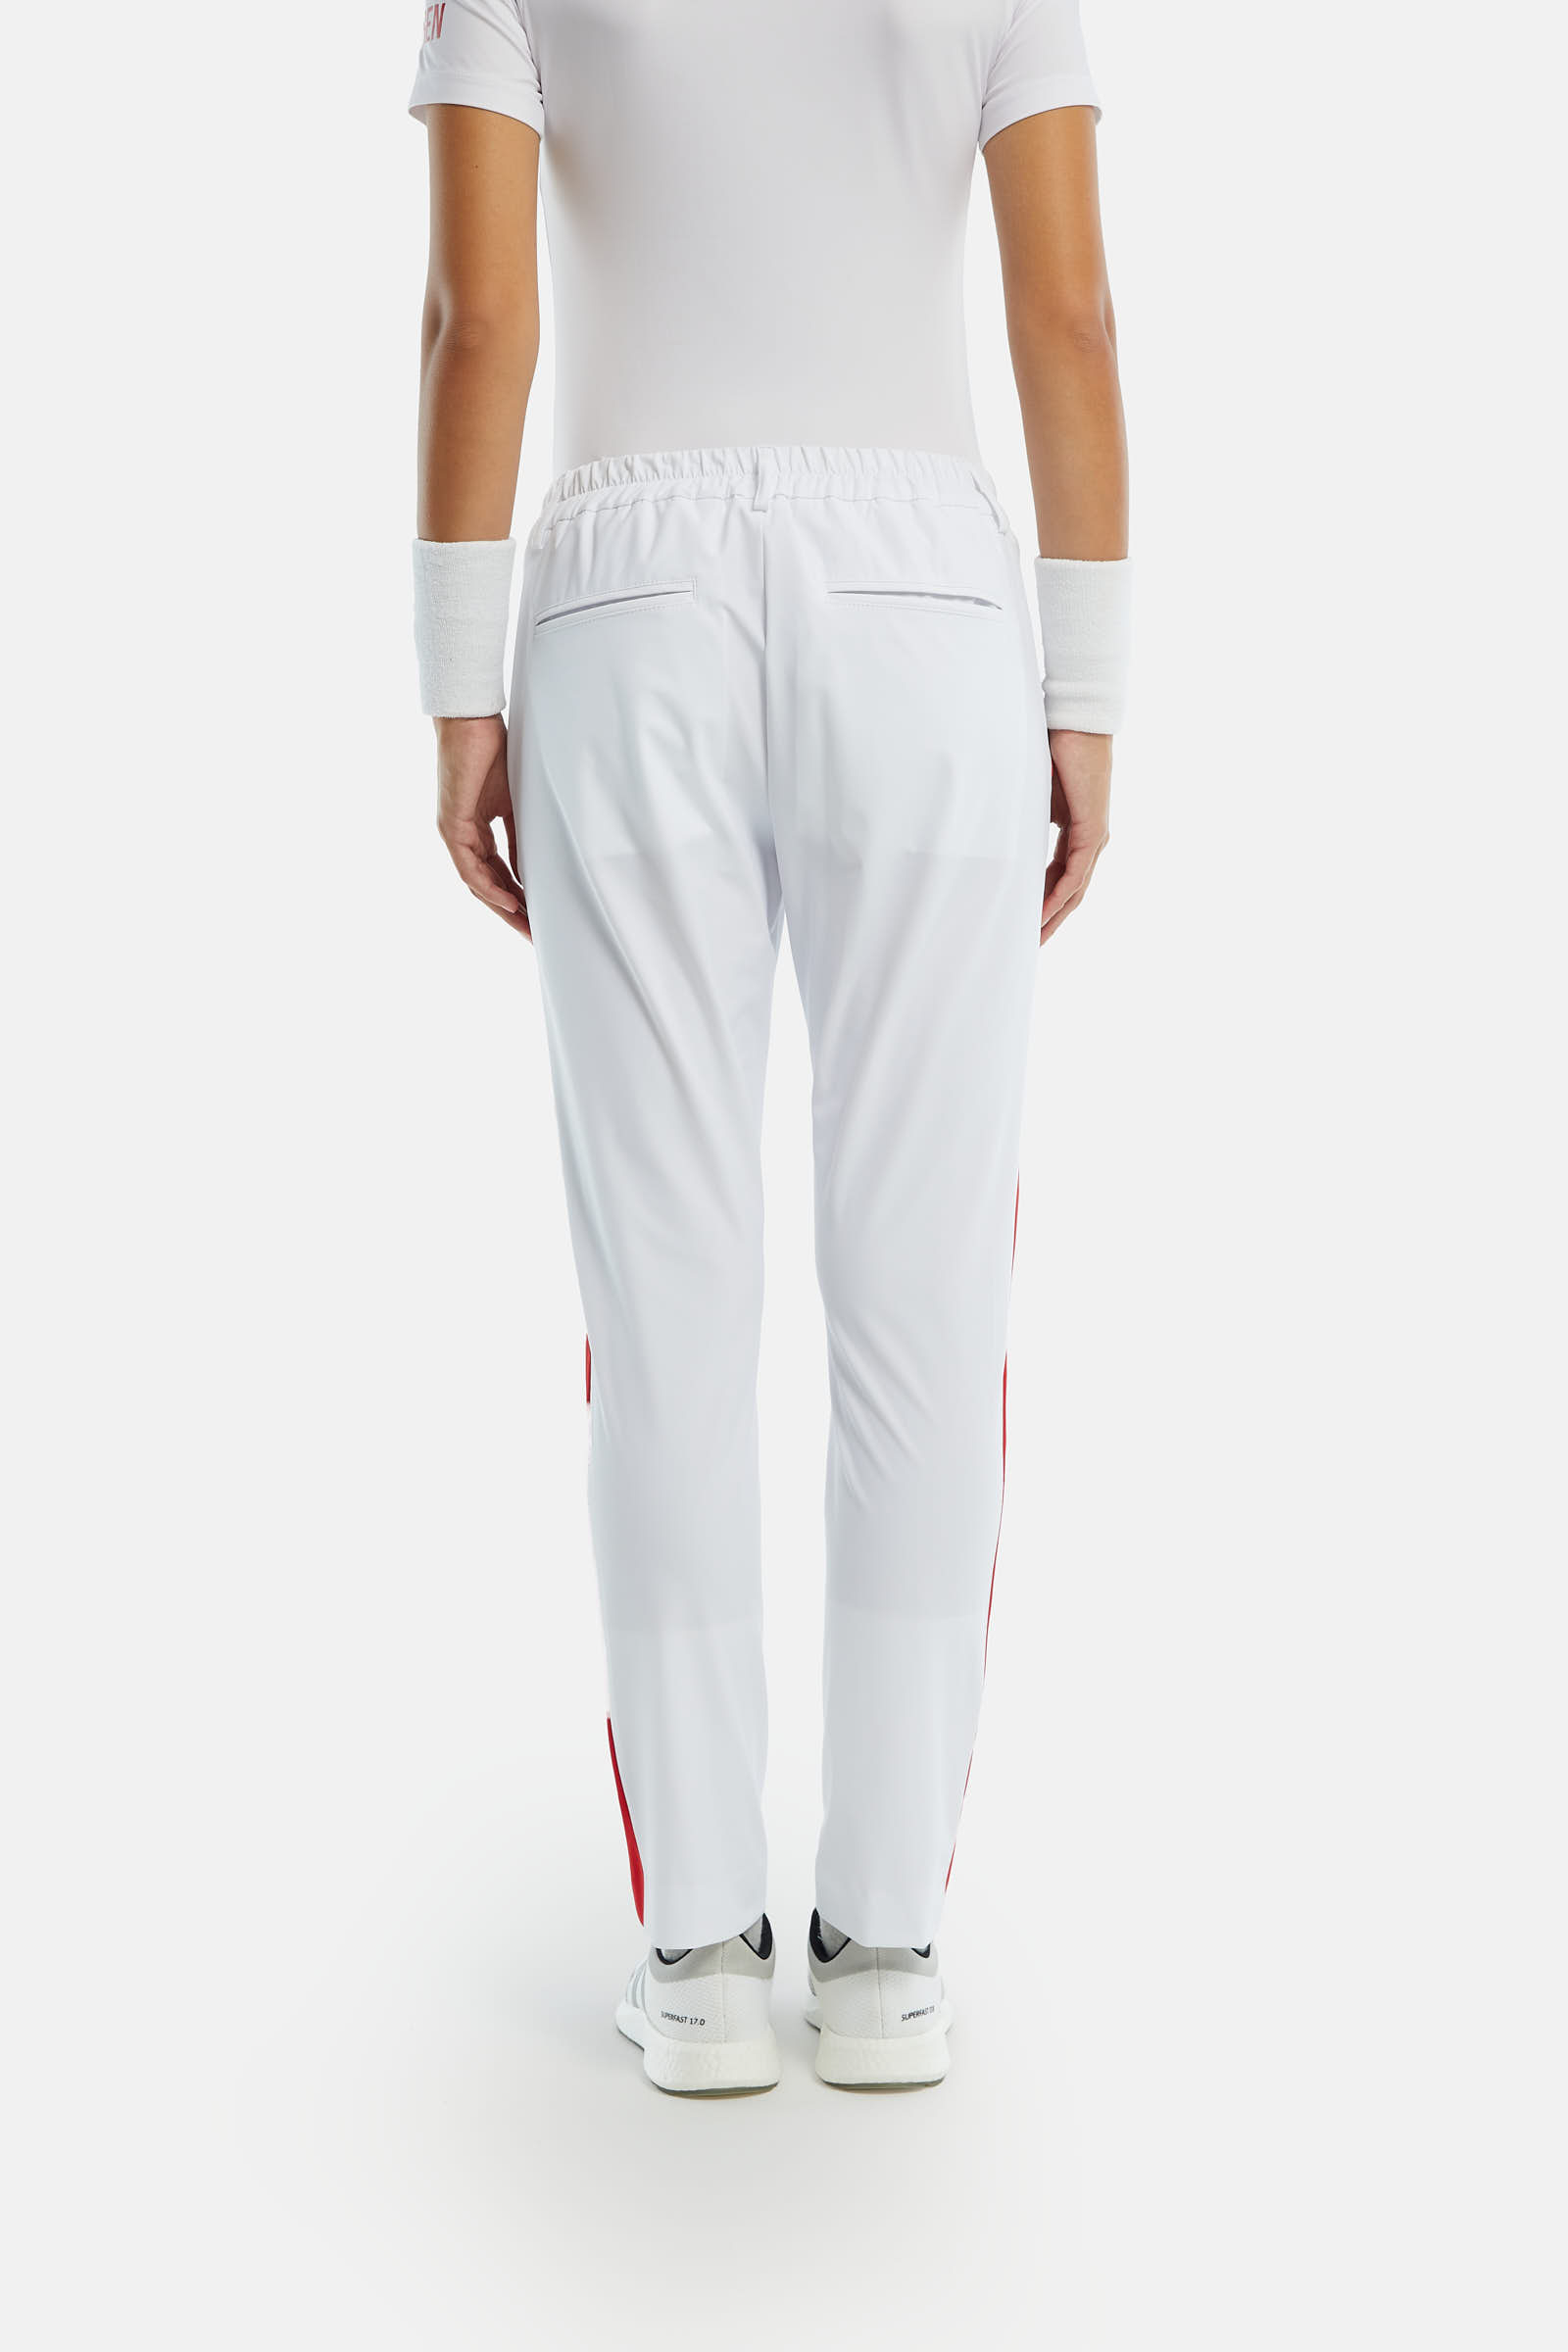 PANTALONI TECNICI BICOLOR - WHITE,RED - Abbigliamento sportivo | Hydrogen